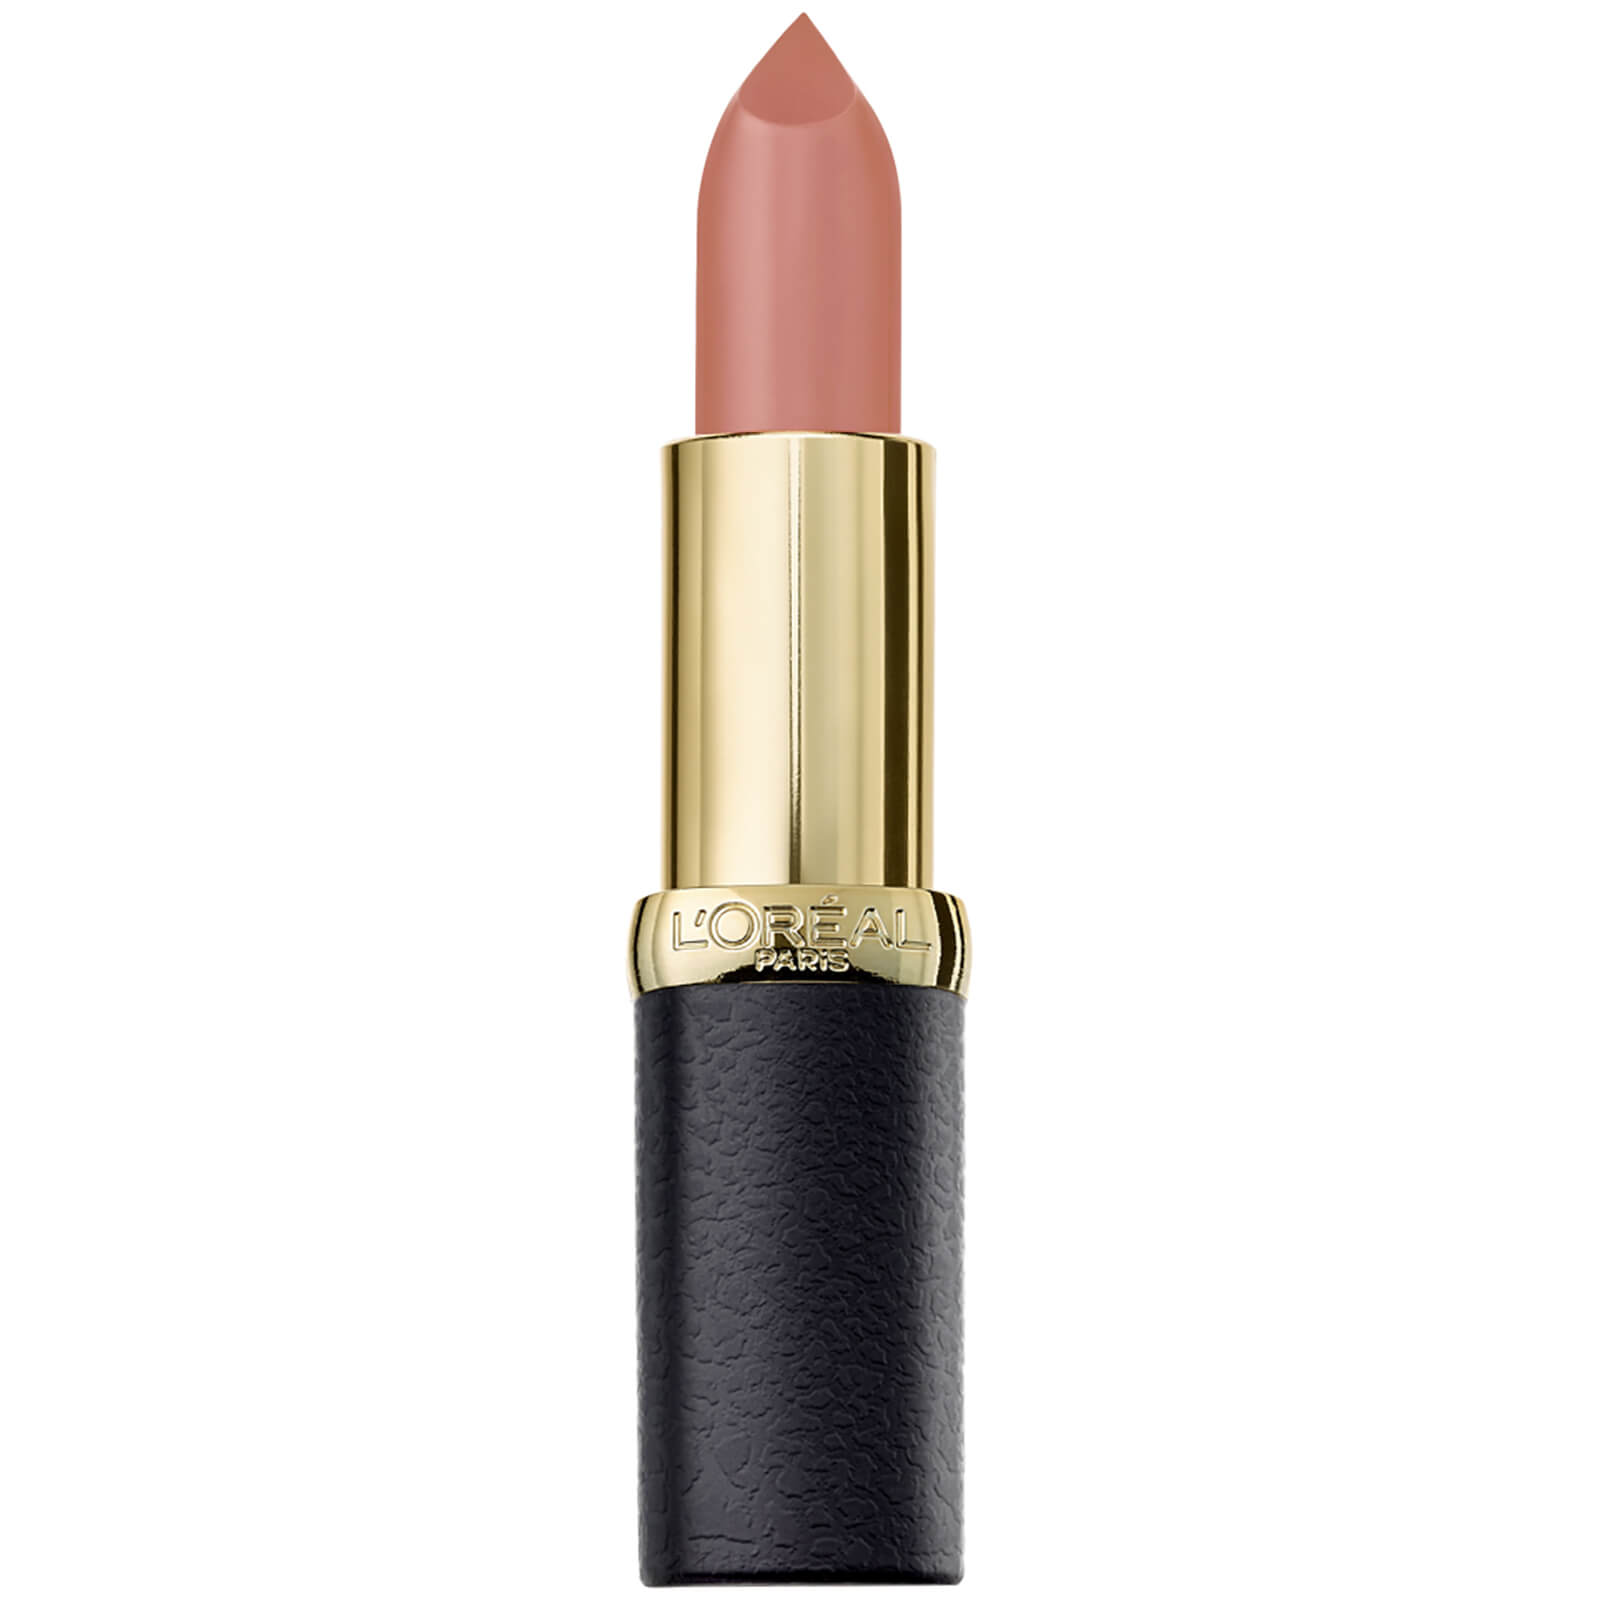 L'Oréal Paris Color Riche Matte Addiction Lipstick 4.8g (Various Shades) - 18 633 Moka Chic